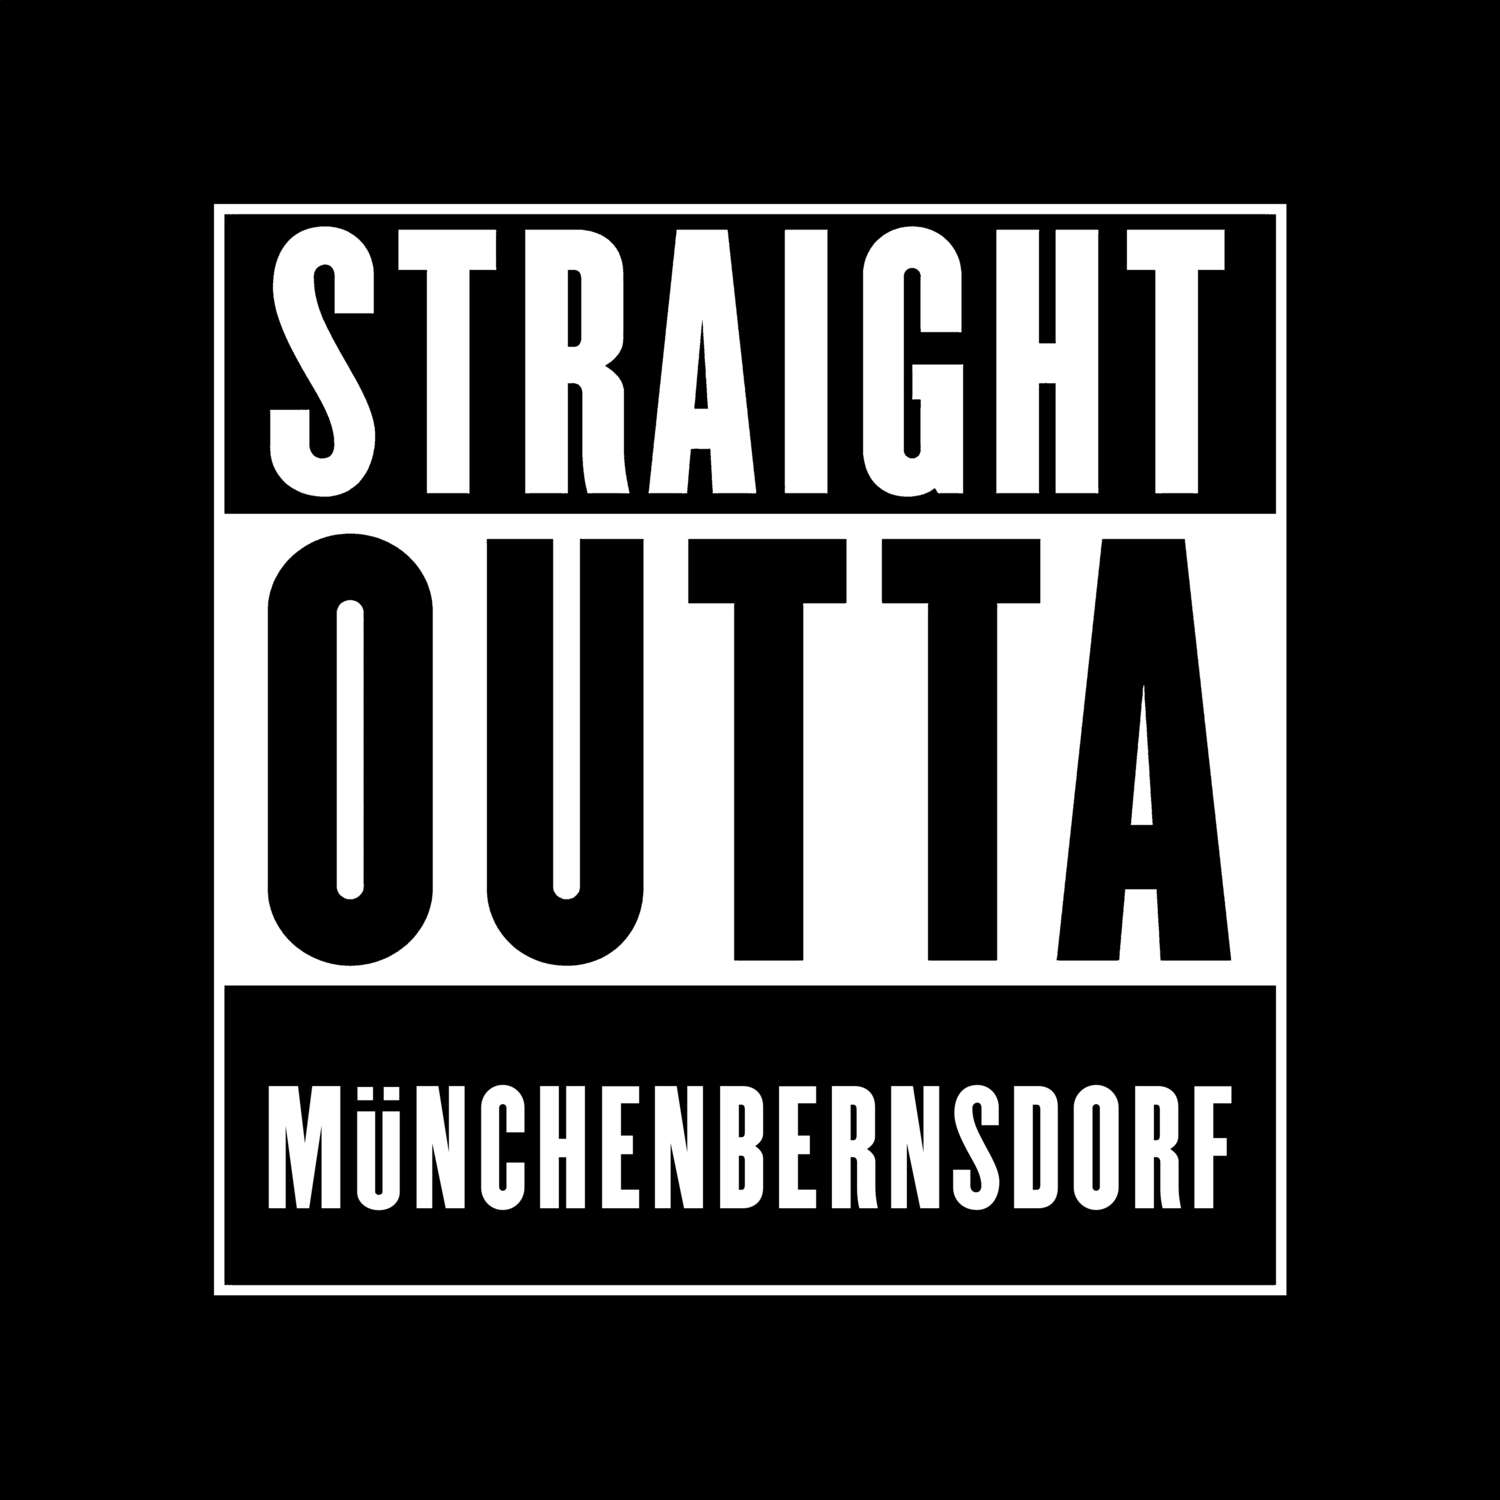 Münchenbernsdorf T-Shirt »Straight Outta«